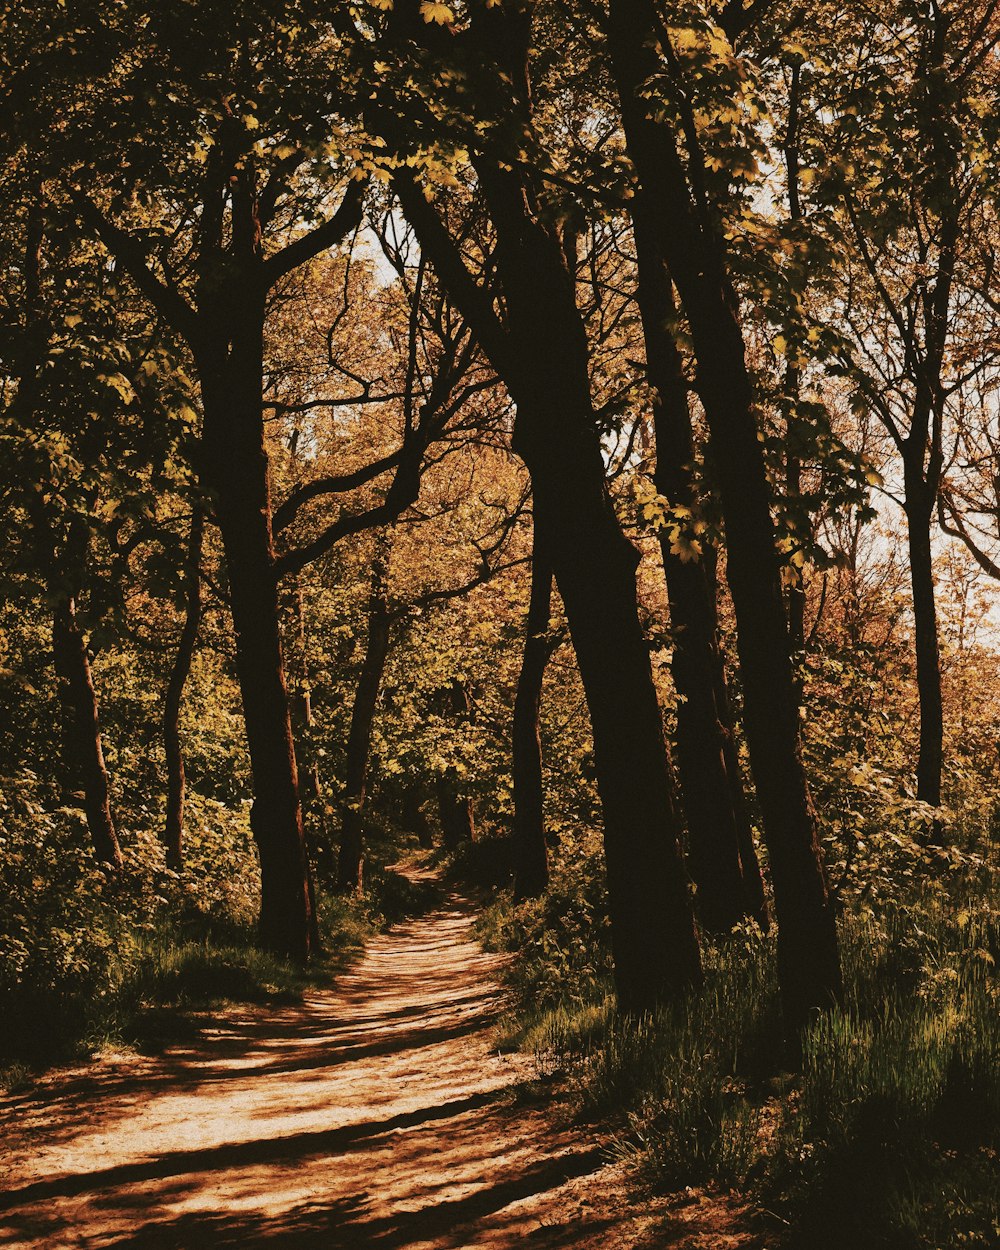 eine unbefestigte Straße, umgeben von Bäumen in einem Wald